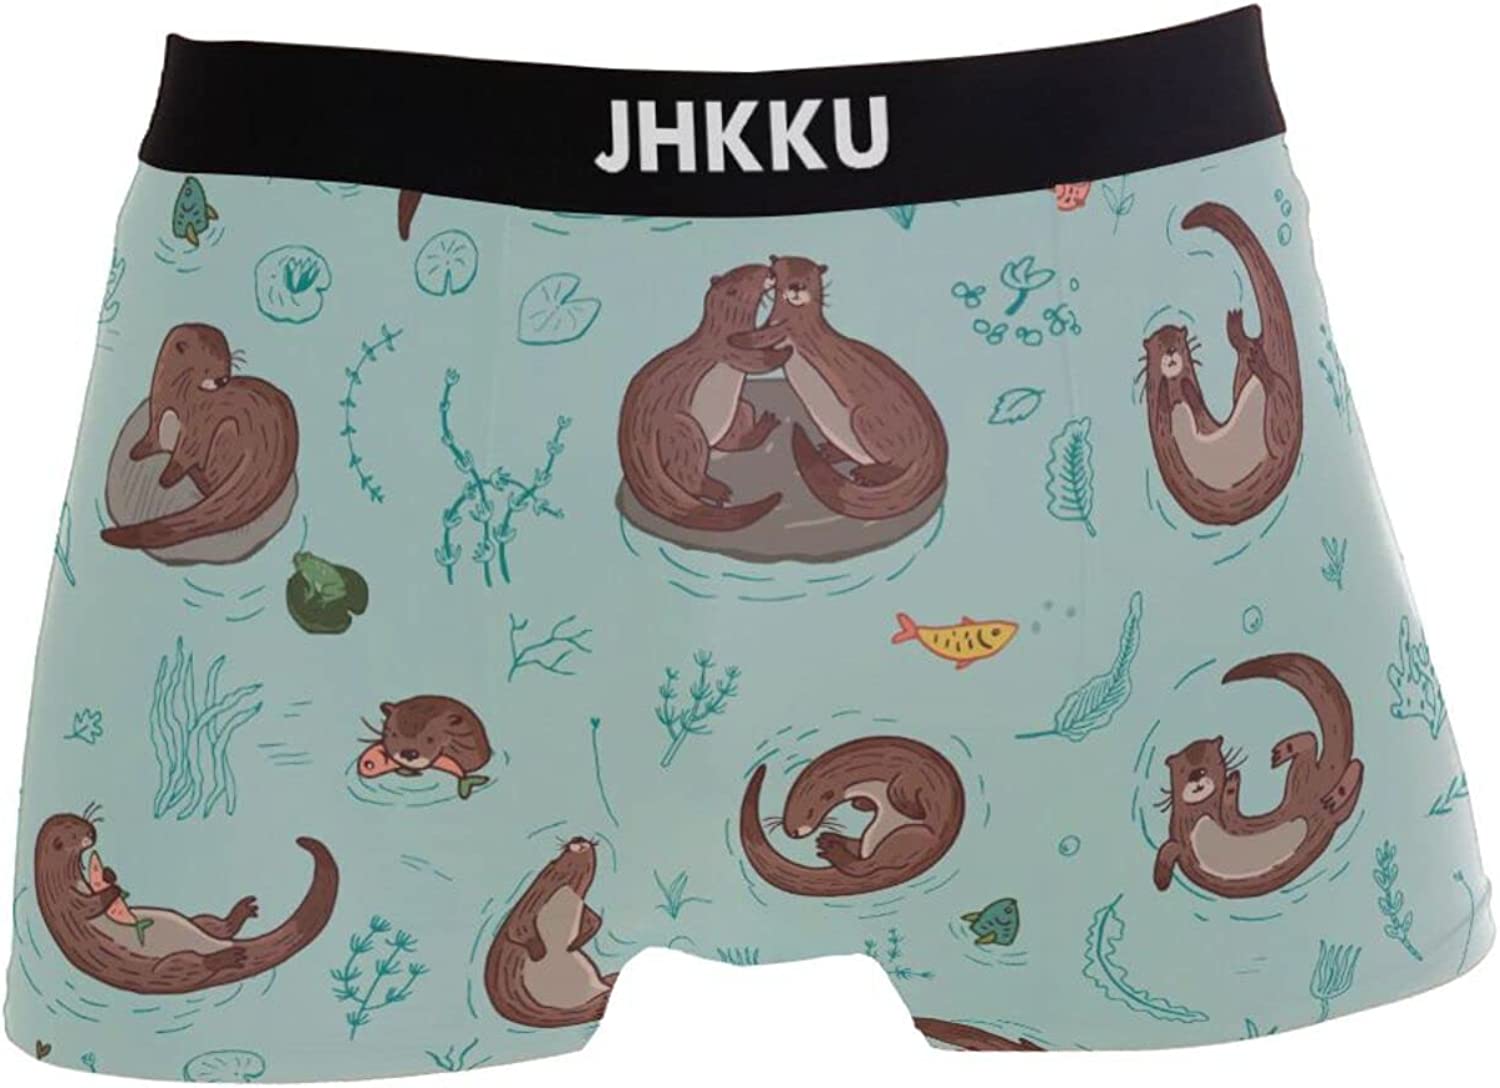 JHKKU Men's Underwear Fashion Stretch Soft Boxer Briefs Comfort Breathable